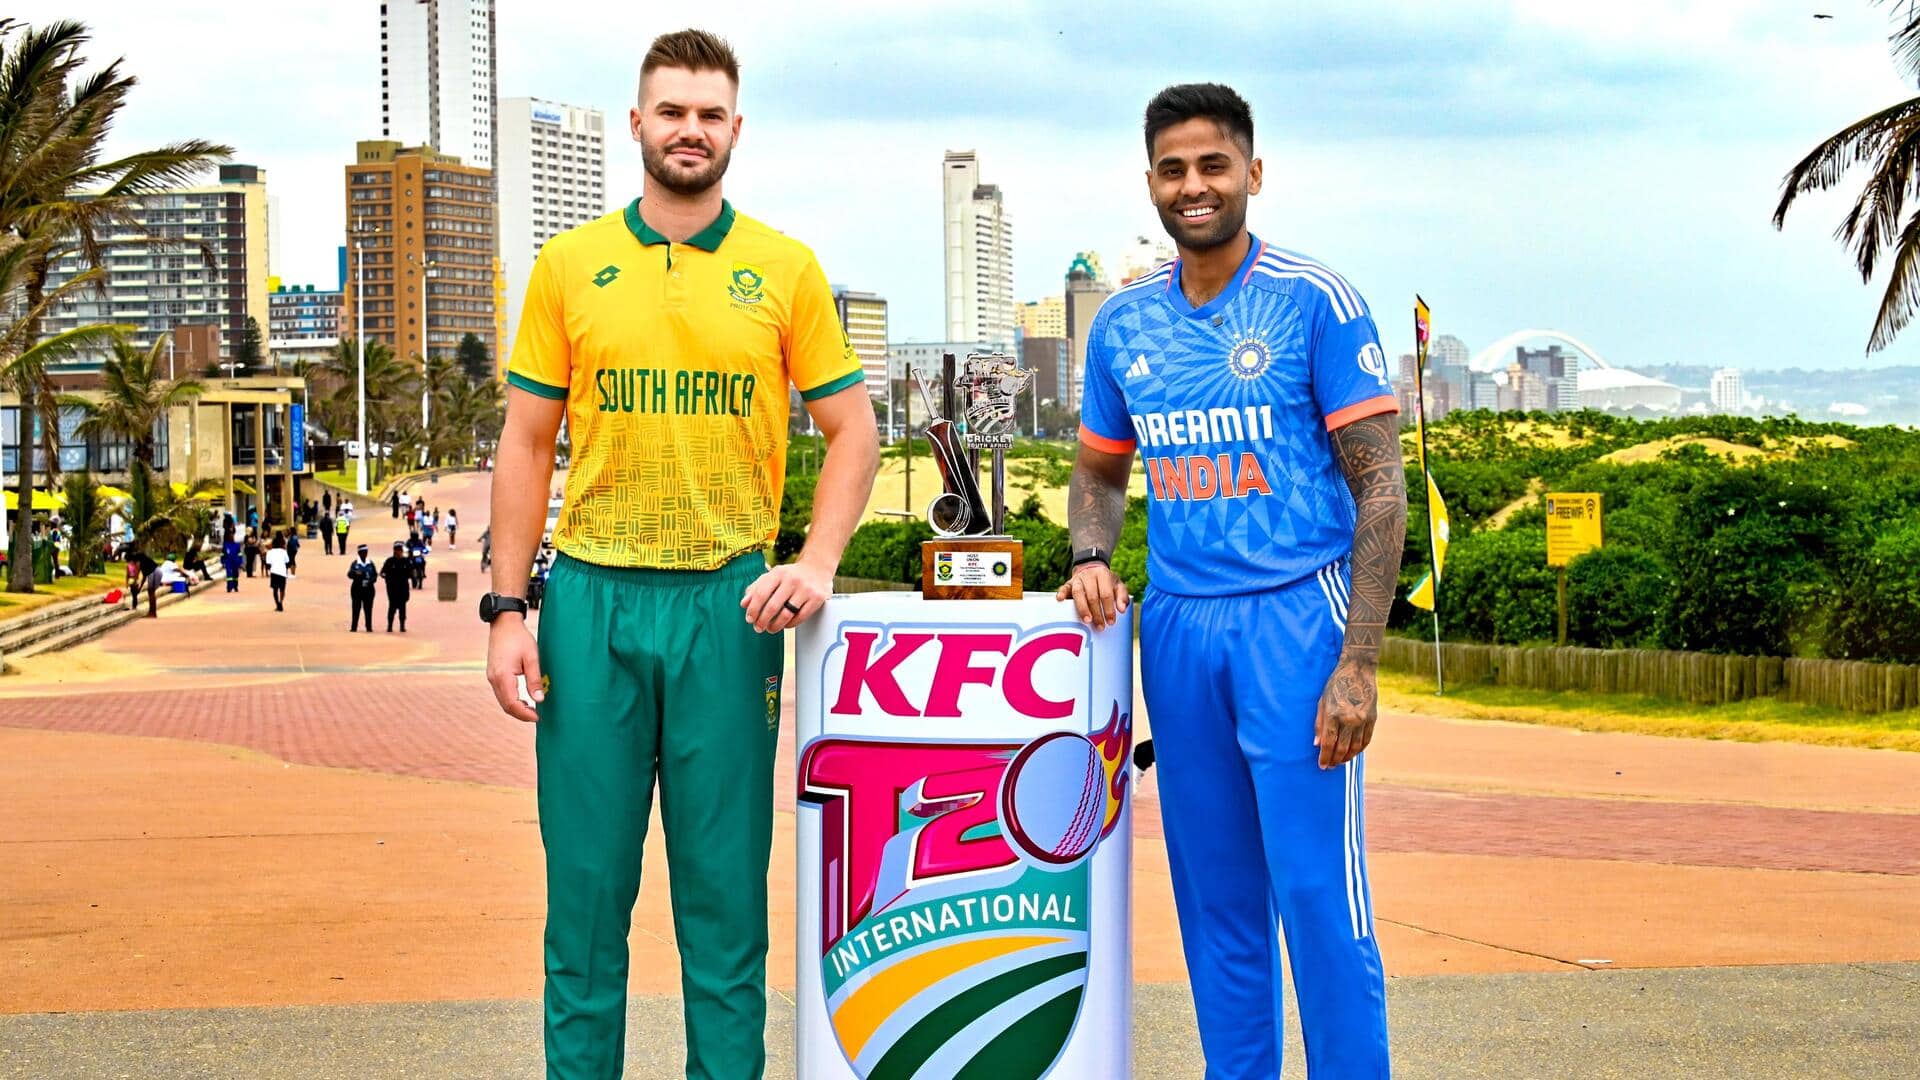 दूसरा टी-20: भारत के खिलाफ दक्षिण अफ्रीका ने टॉस जीतकर चुनी गेंदबाजी, जानिए प्लेइंग इलेवन